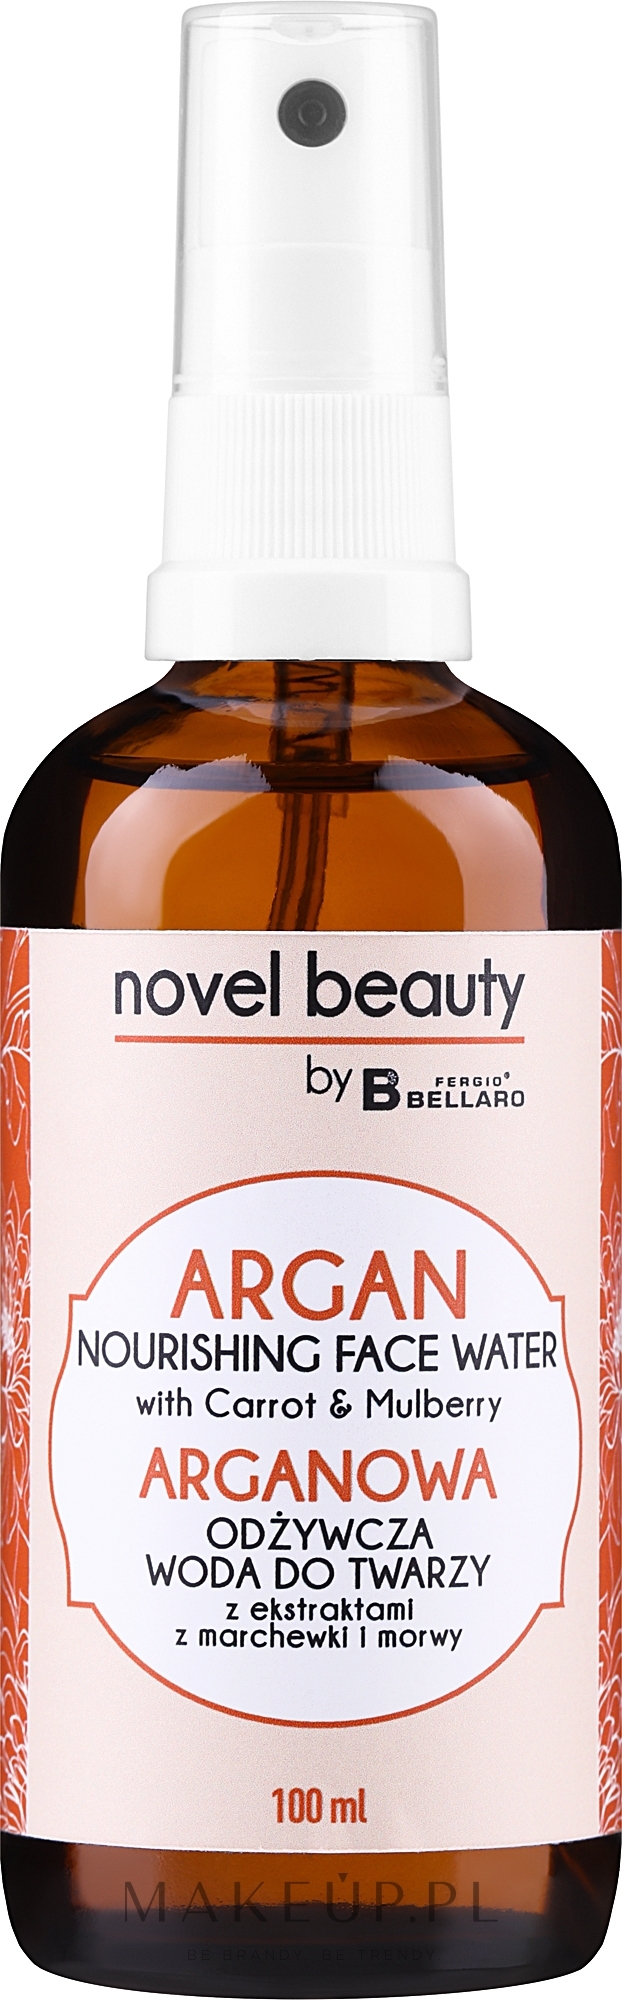 Arganowa odżywcza woda do twarzy z ekstraktami z marchewki i morwy - Fergio Bellaro Novel Beauty — Zdjęcie 100 ml